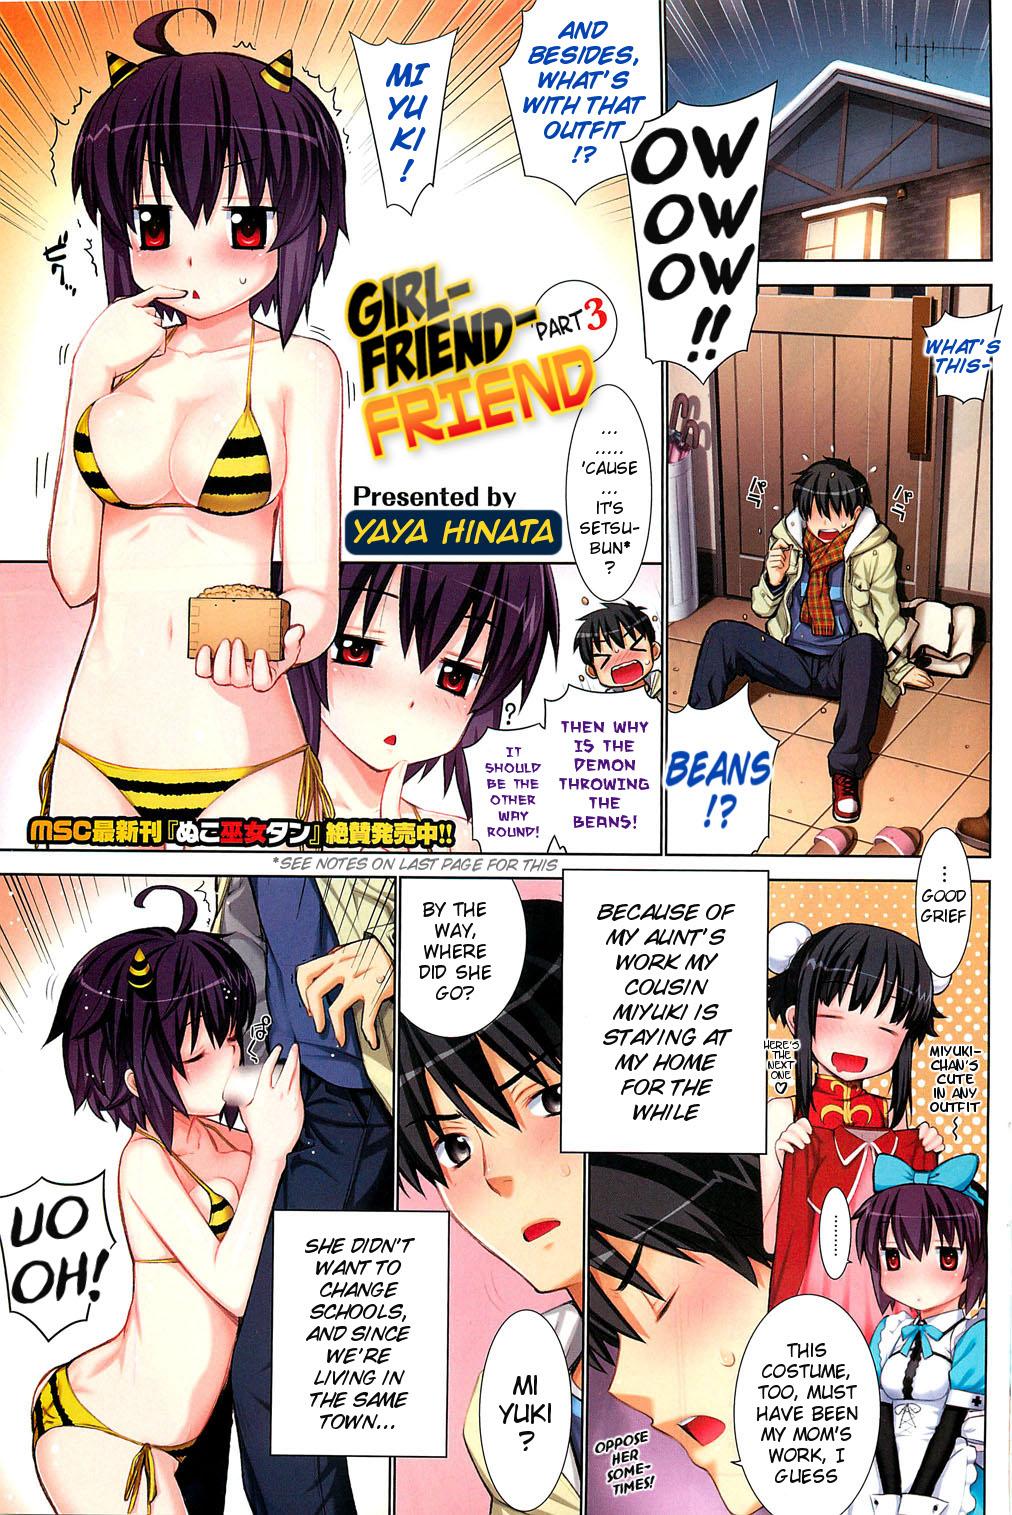 [Yaya Hinata] Girlfriend-Friend (Kanojo Friend) Part 1.5 + 3 [English] {MumeiTL} 7